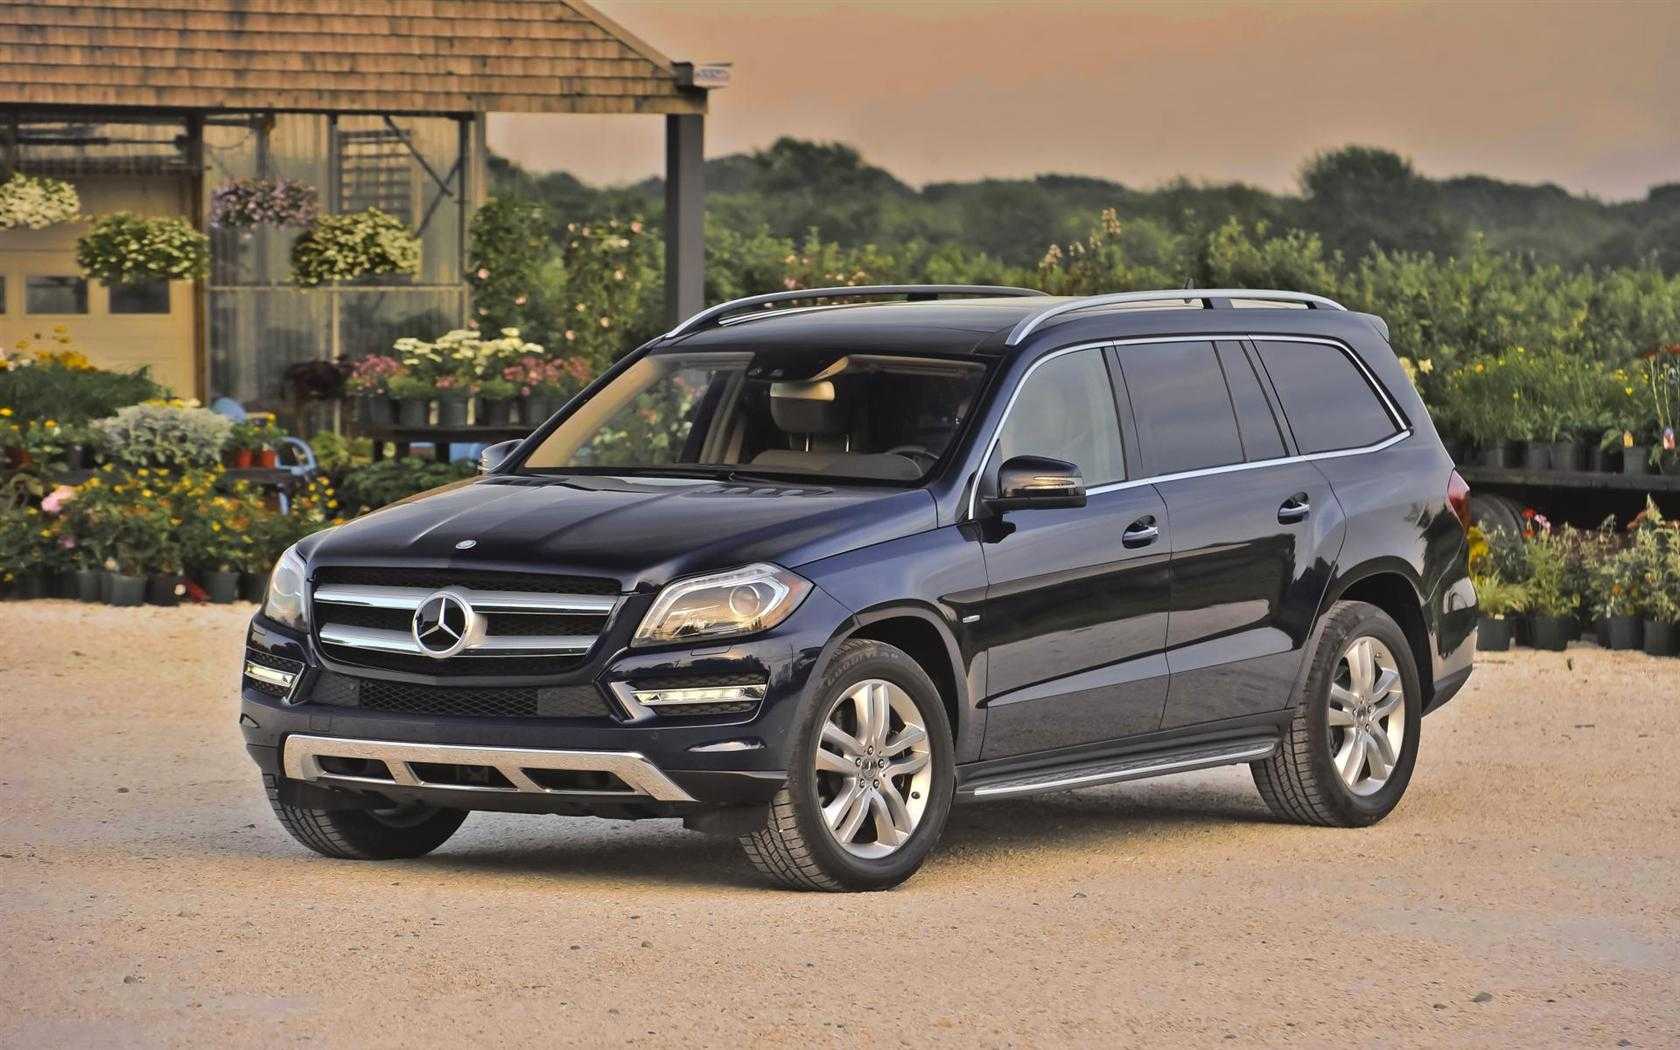 Mercedes-benz gl-class 350, 400, 450, 500 реальные отзывы о расходе топлива: бензина и дизеля